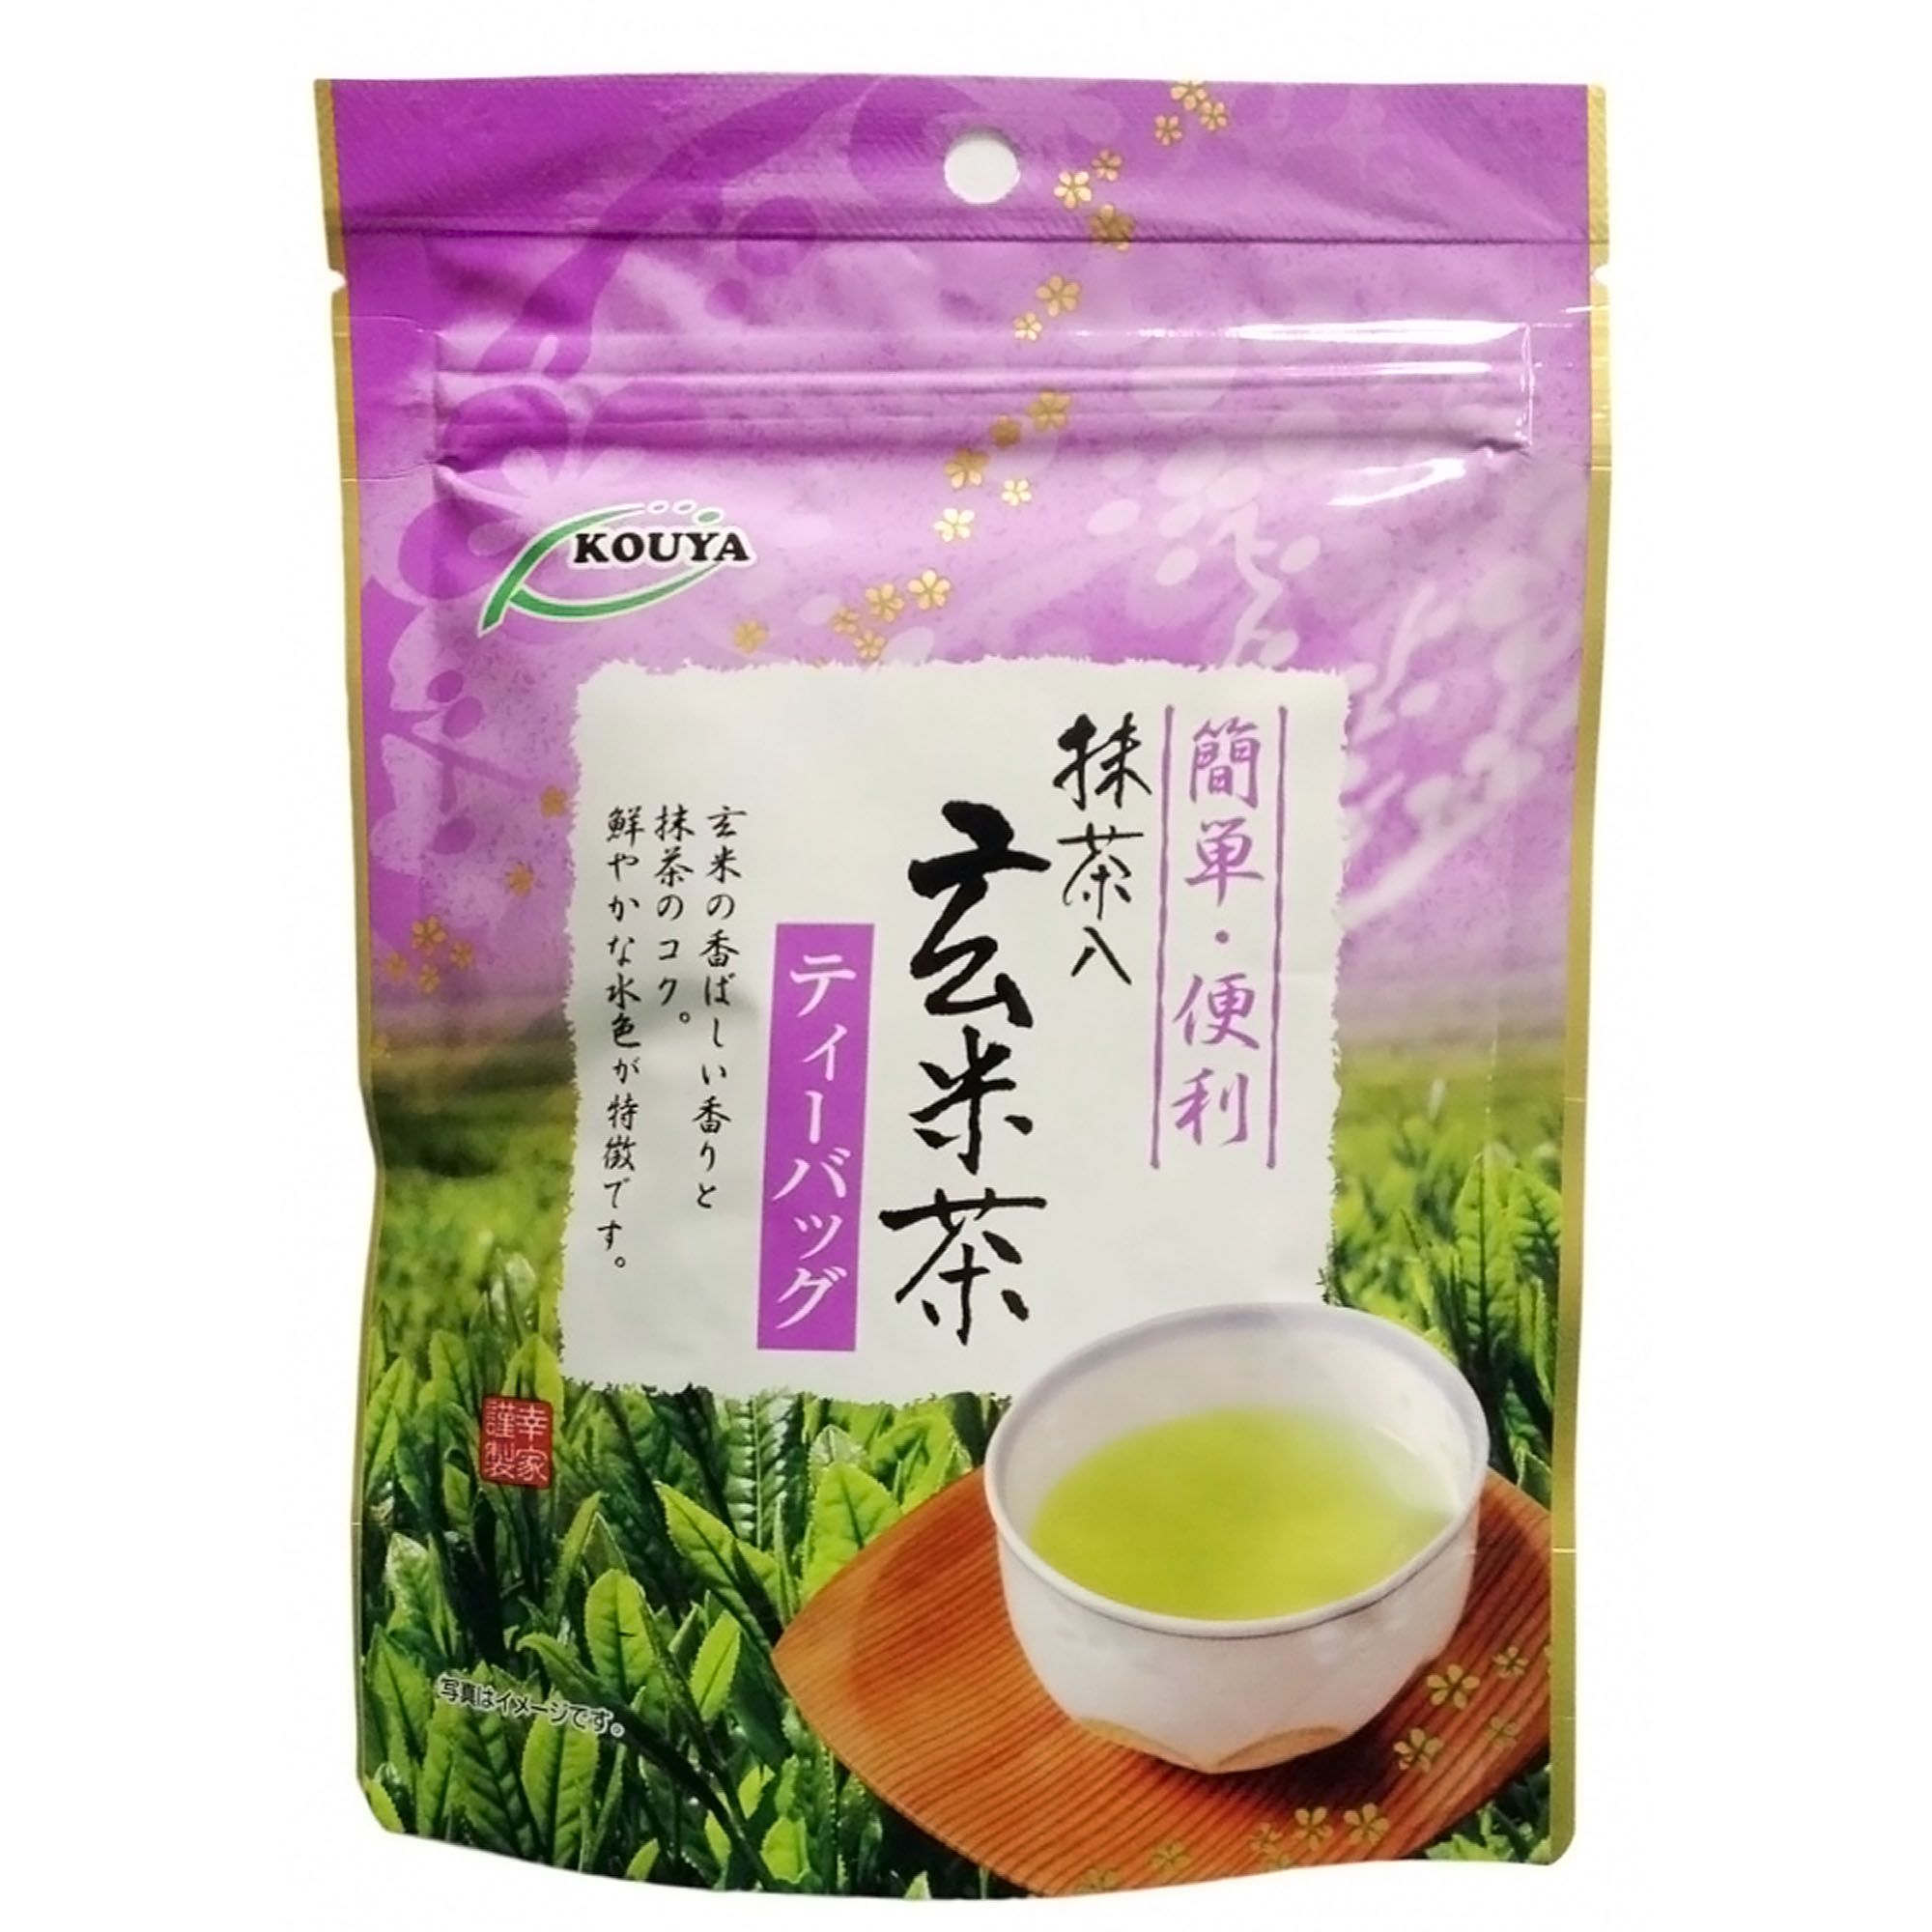 Японский чай Kouya Геммай-ча (15 шт), 30 г чай органический tipson матча с масала 25 пакетиков